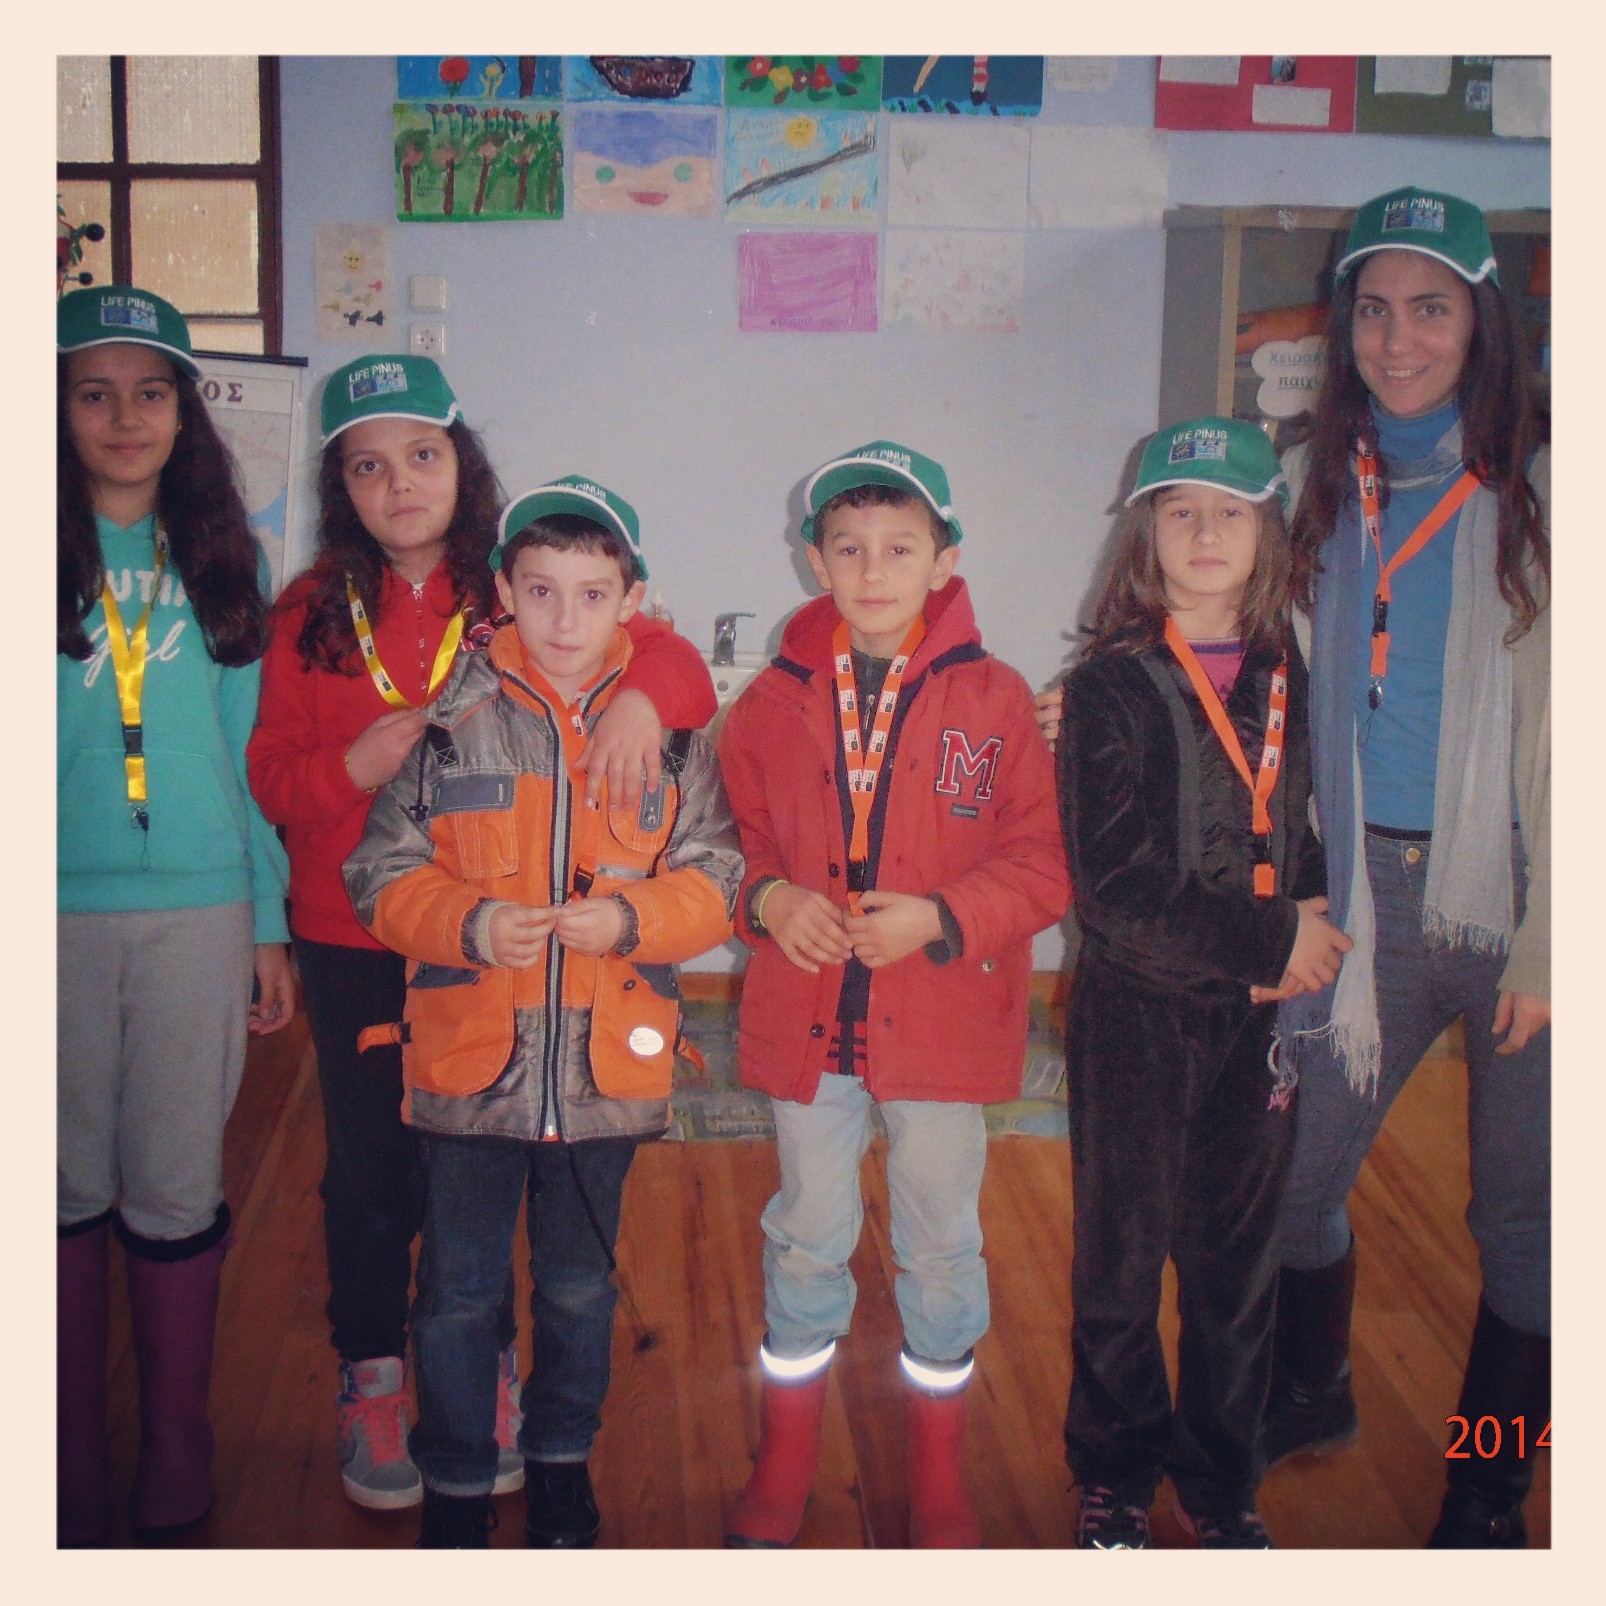 Μαθητές από το Δημοτικό Σχολείο Αγίου Πέτρου στο Φορέα Διαχείρισης Πάρνωνα